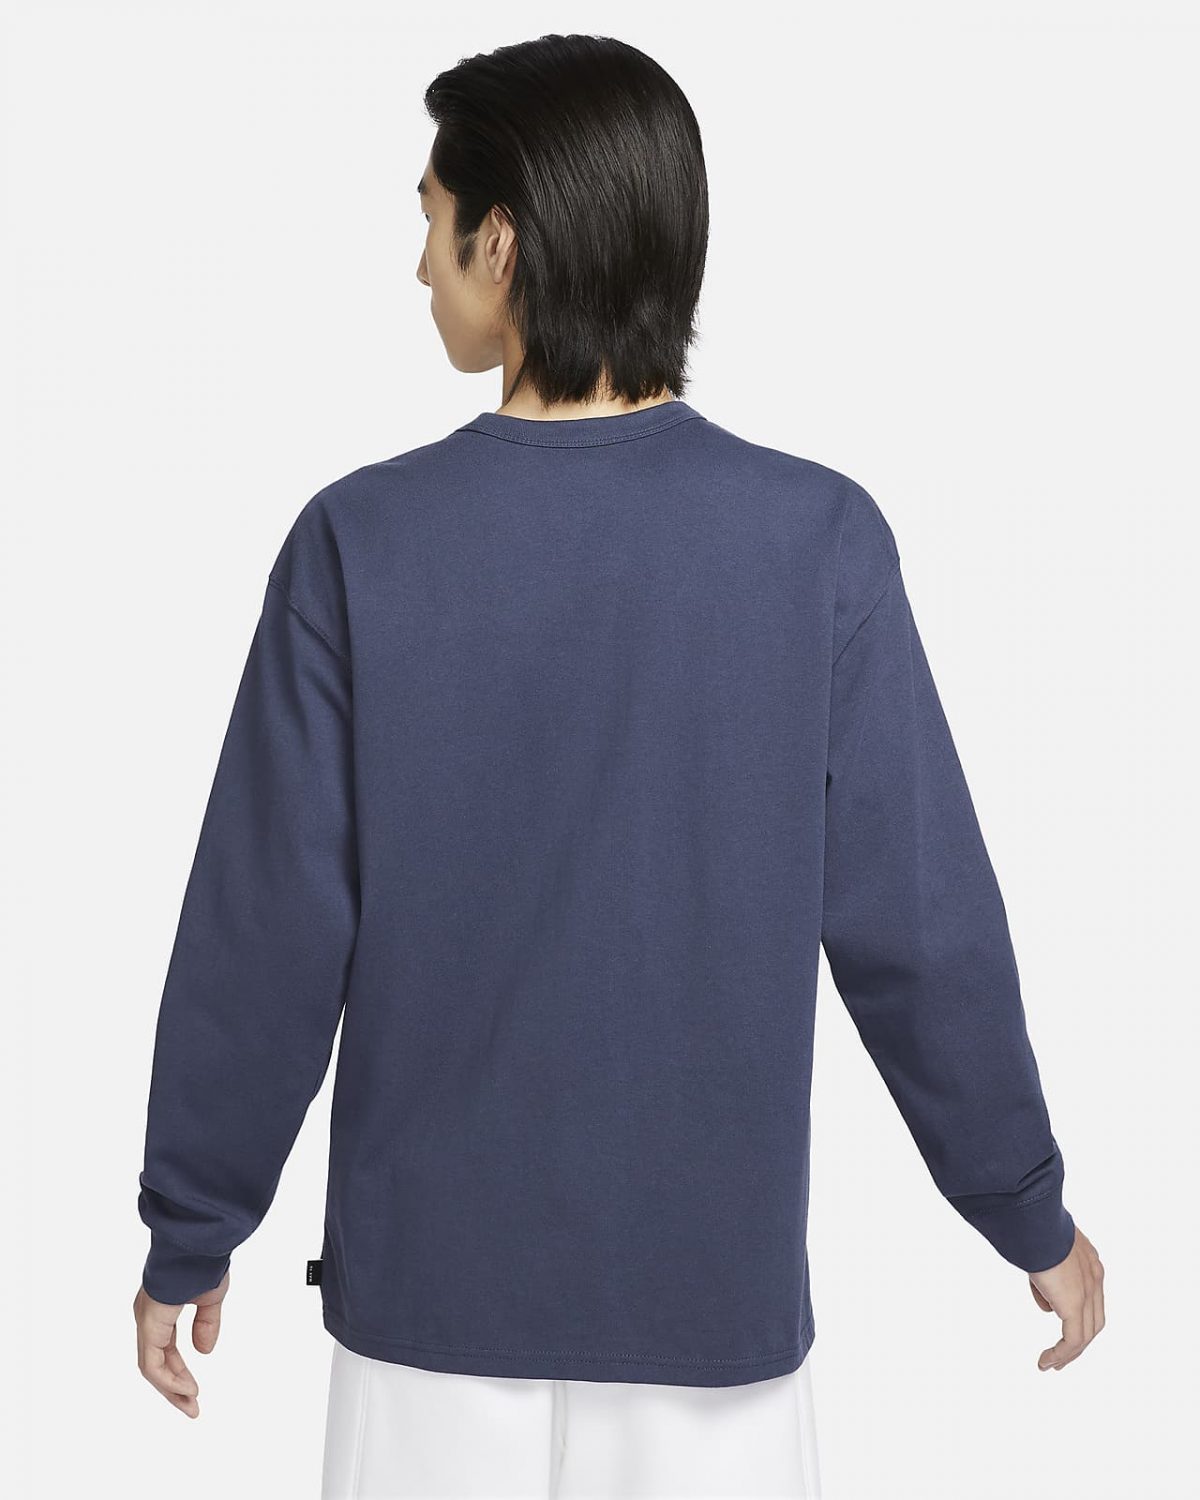 Мужская футболка Nike Sportswear Premium Essentials синяя фотография